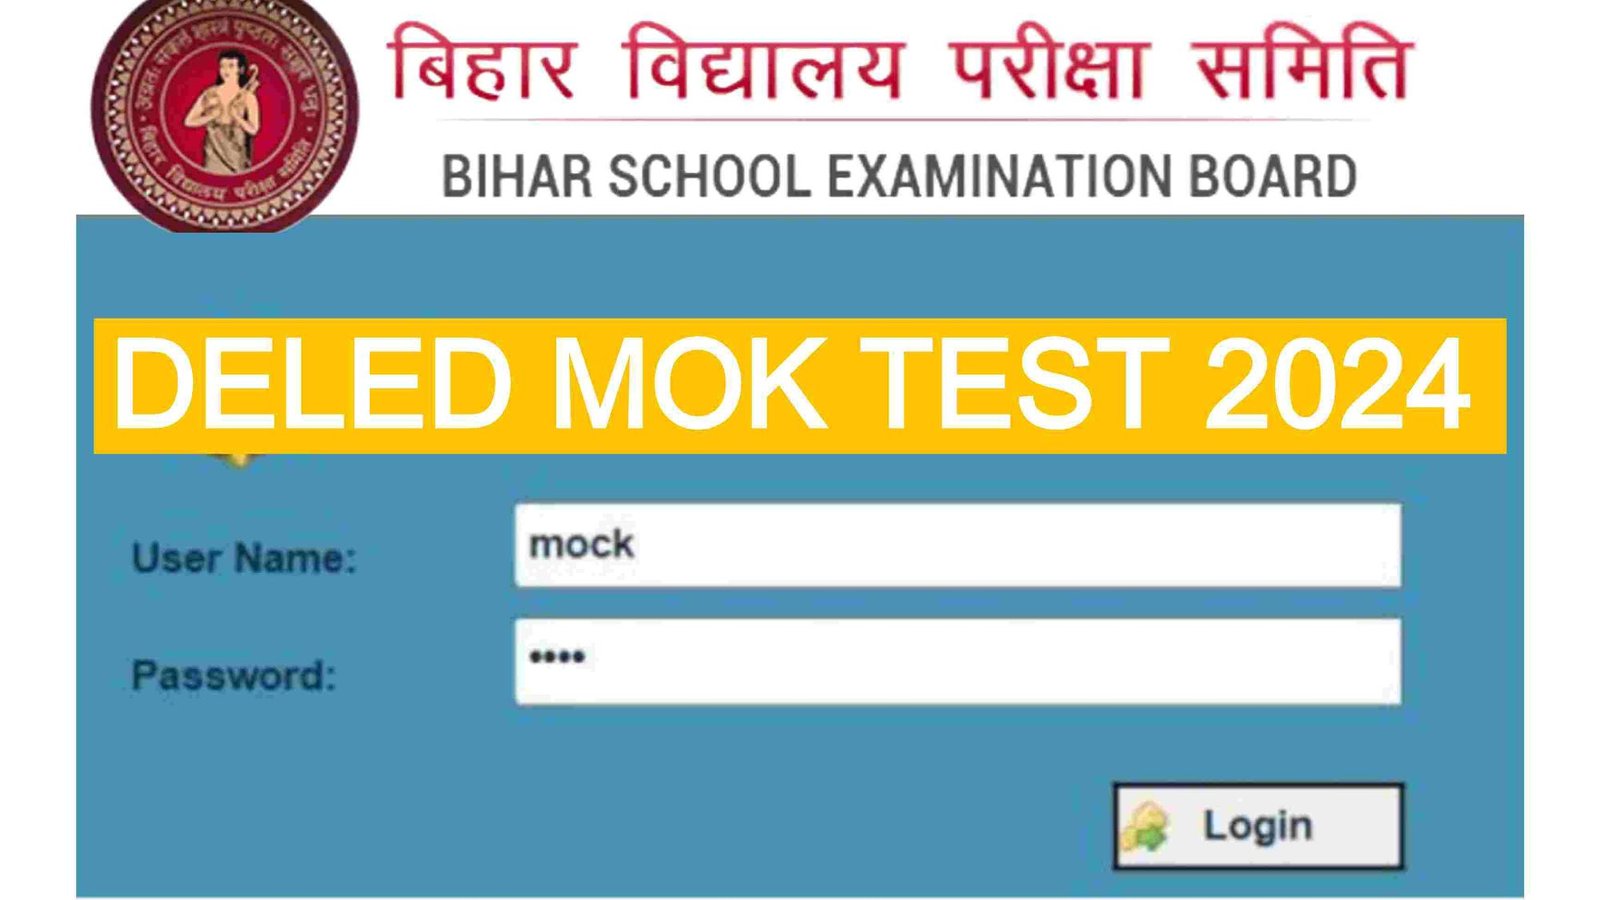 Bihar Deled Mok Test 2024